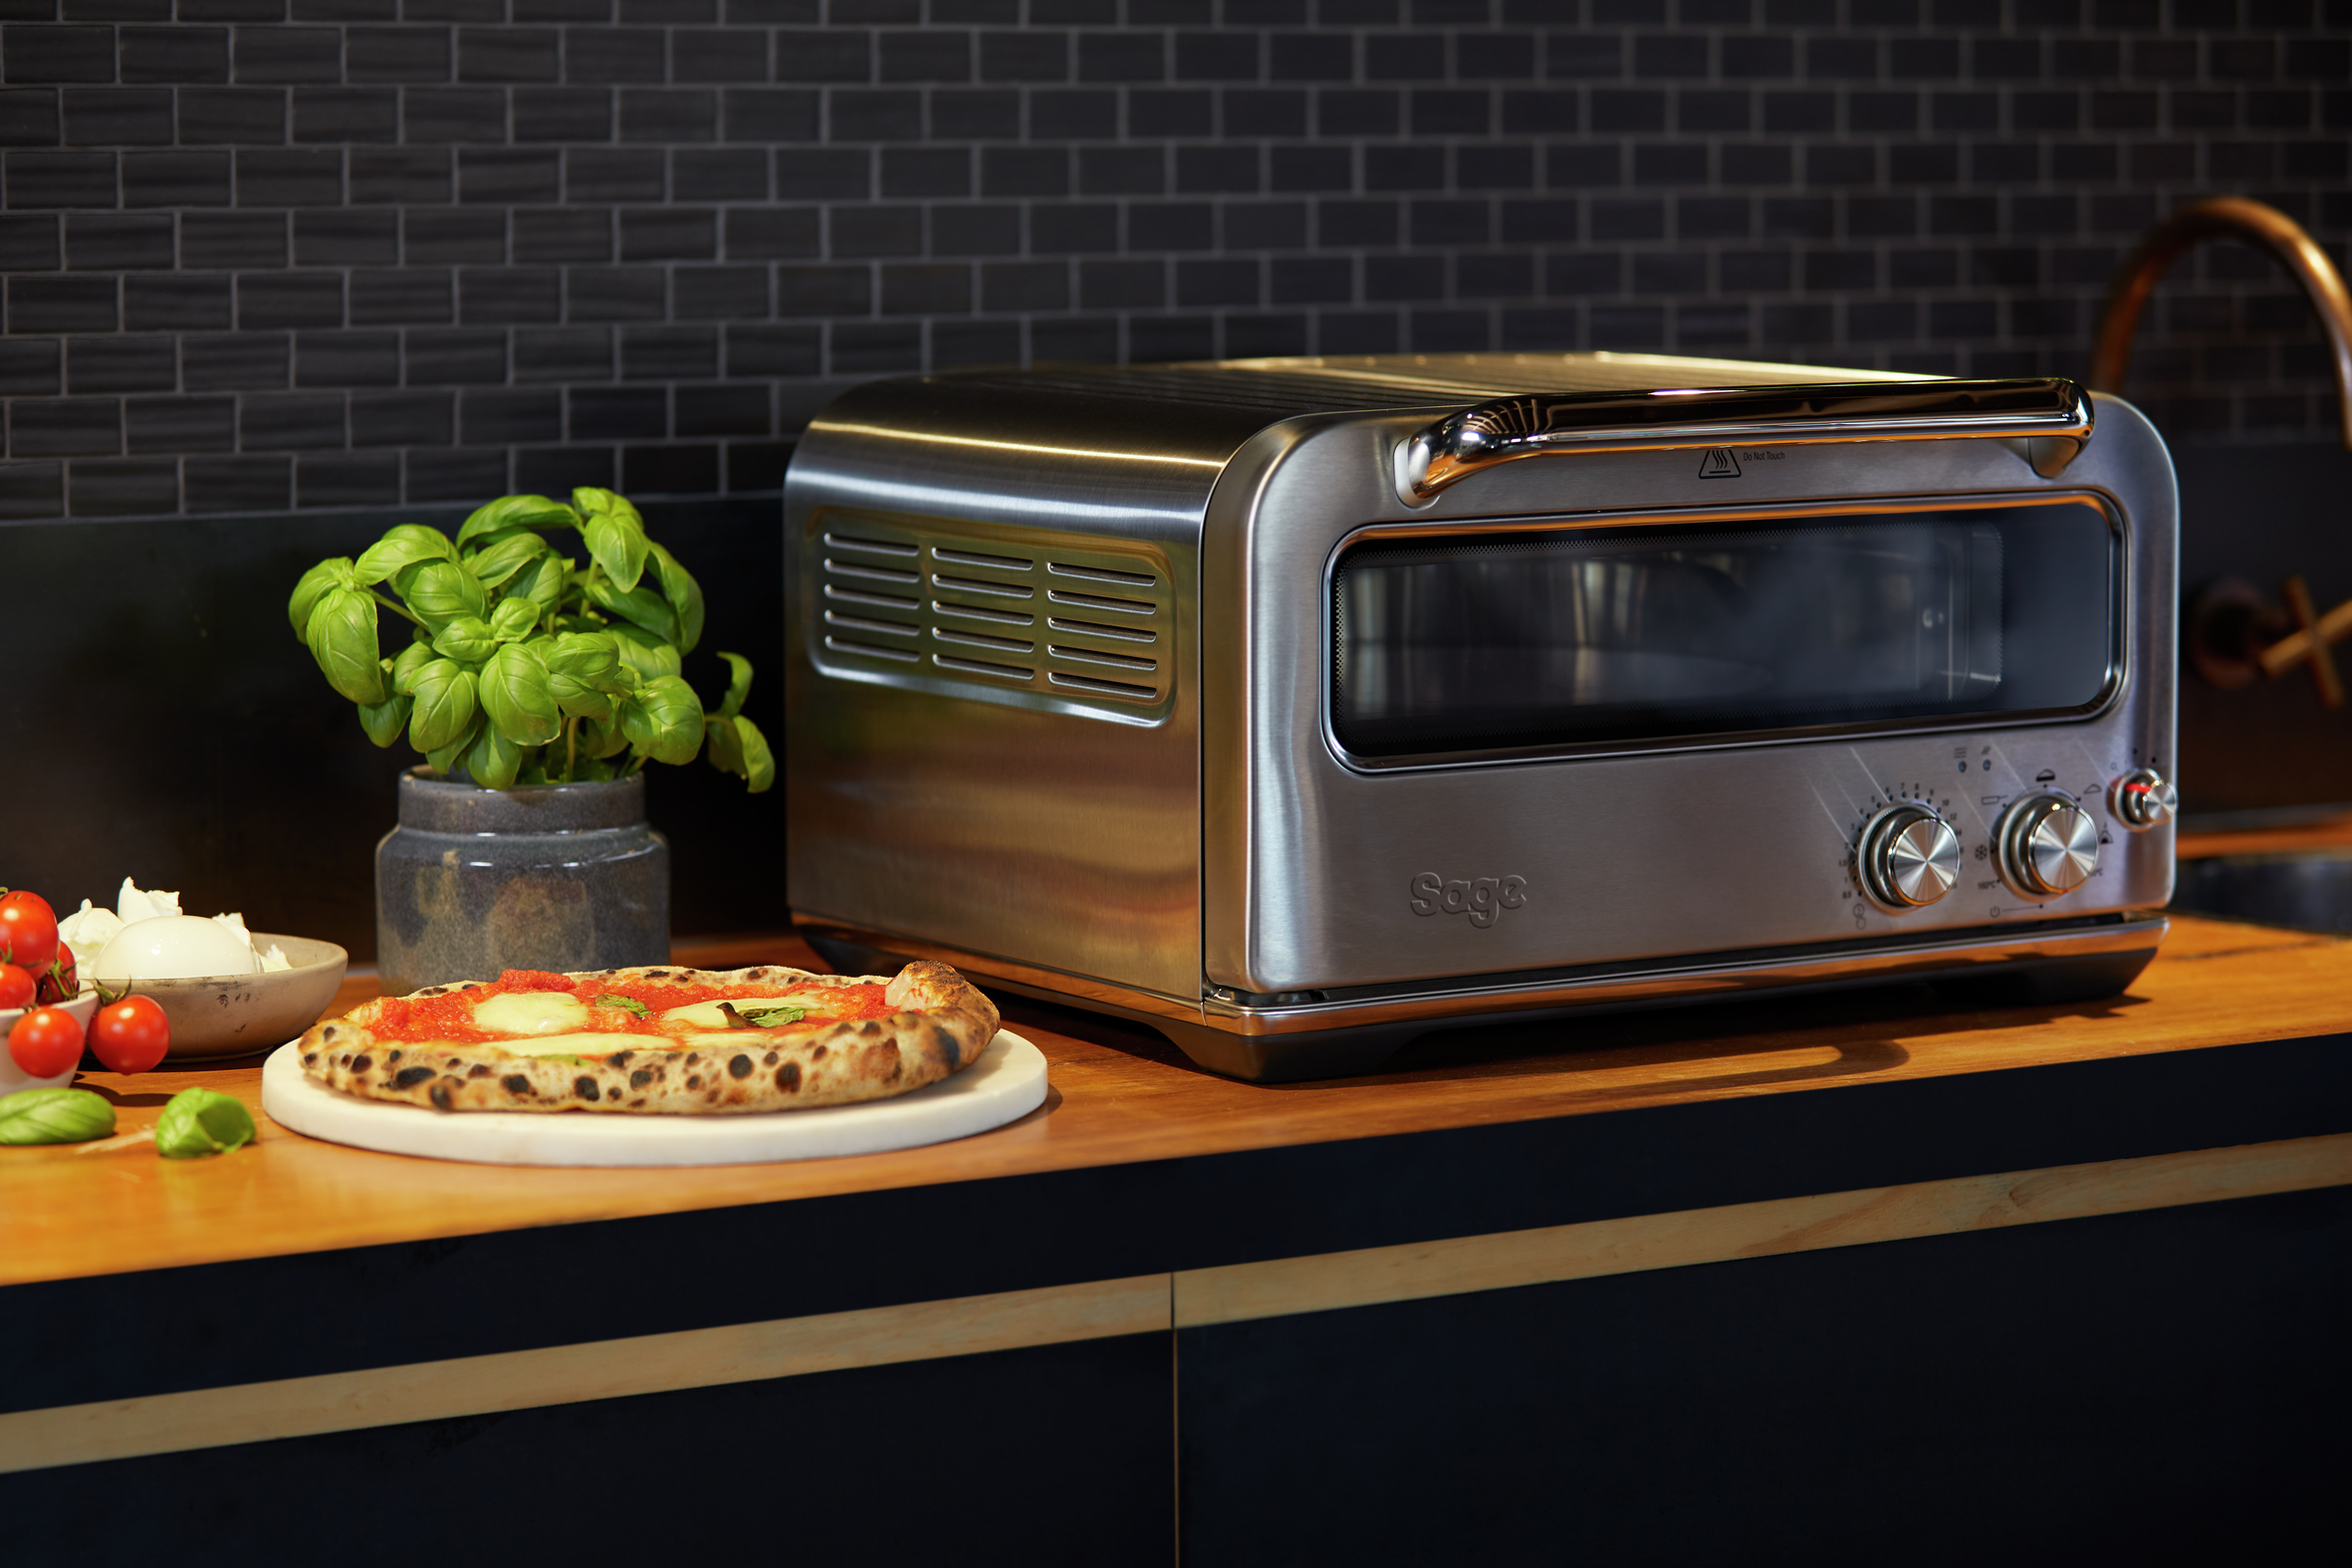 Mamma mia: Mit einer Temperatur von bis zu 400 Grad Celsius backt der Smart Oven Pizzaiolo eine knusprige Pizza nach traditionell neapolitanischer Art in nur zwei Minuten.